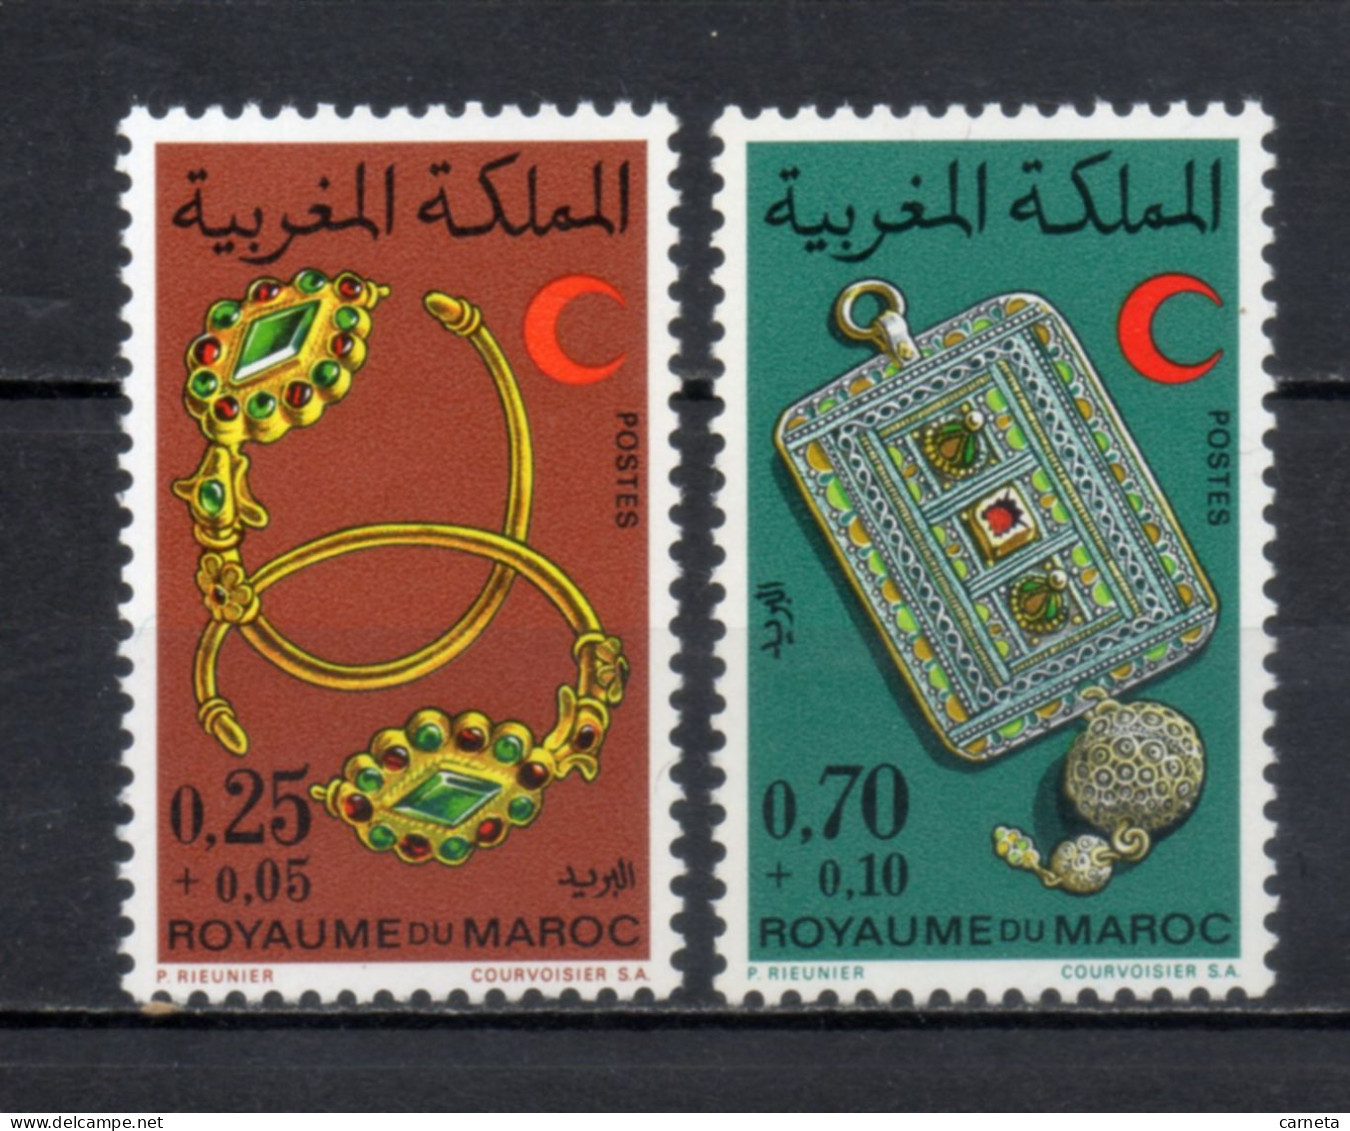 MAROC N°  637 + 638    NEUFS SANS CHARNIERE  COTE 3.50€     CROISSANT ROUGE - Morocco (1956-...)